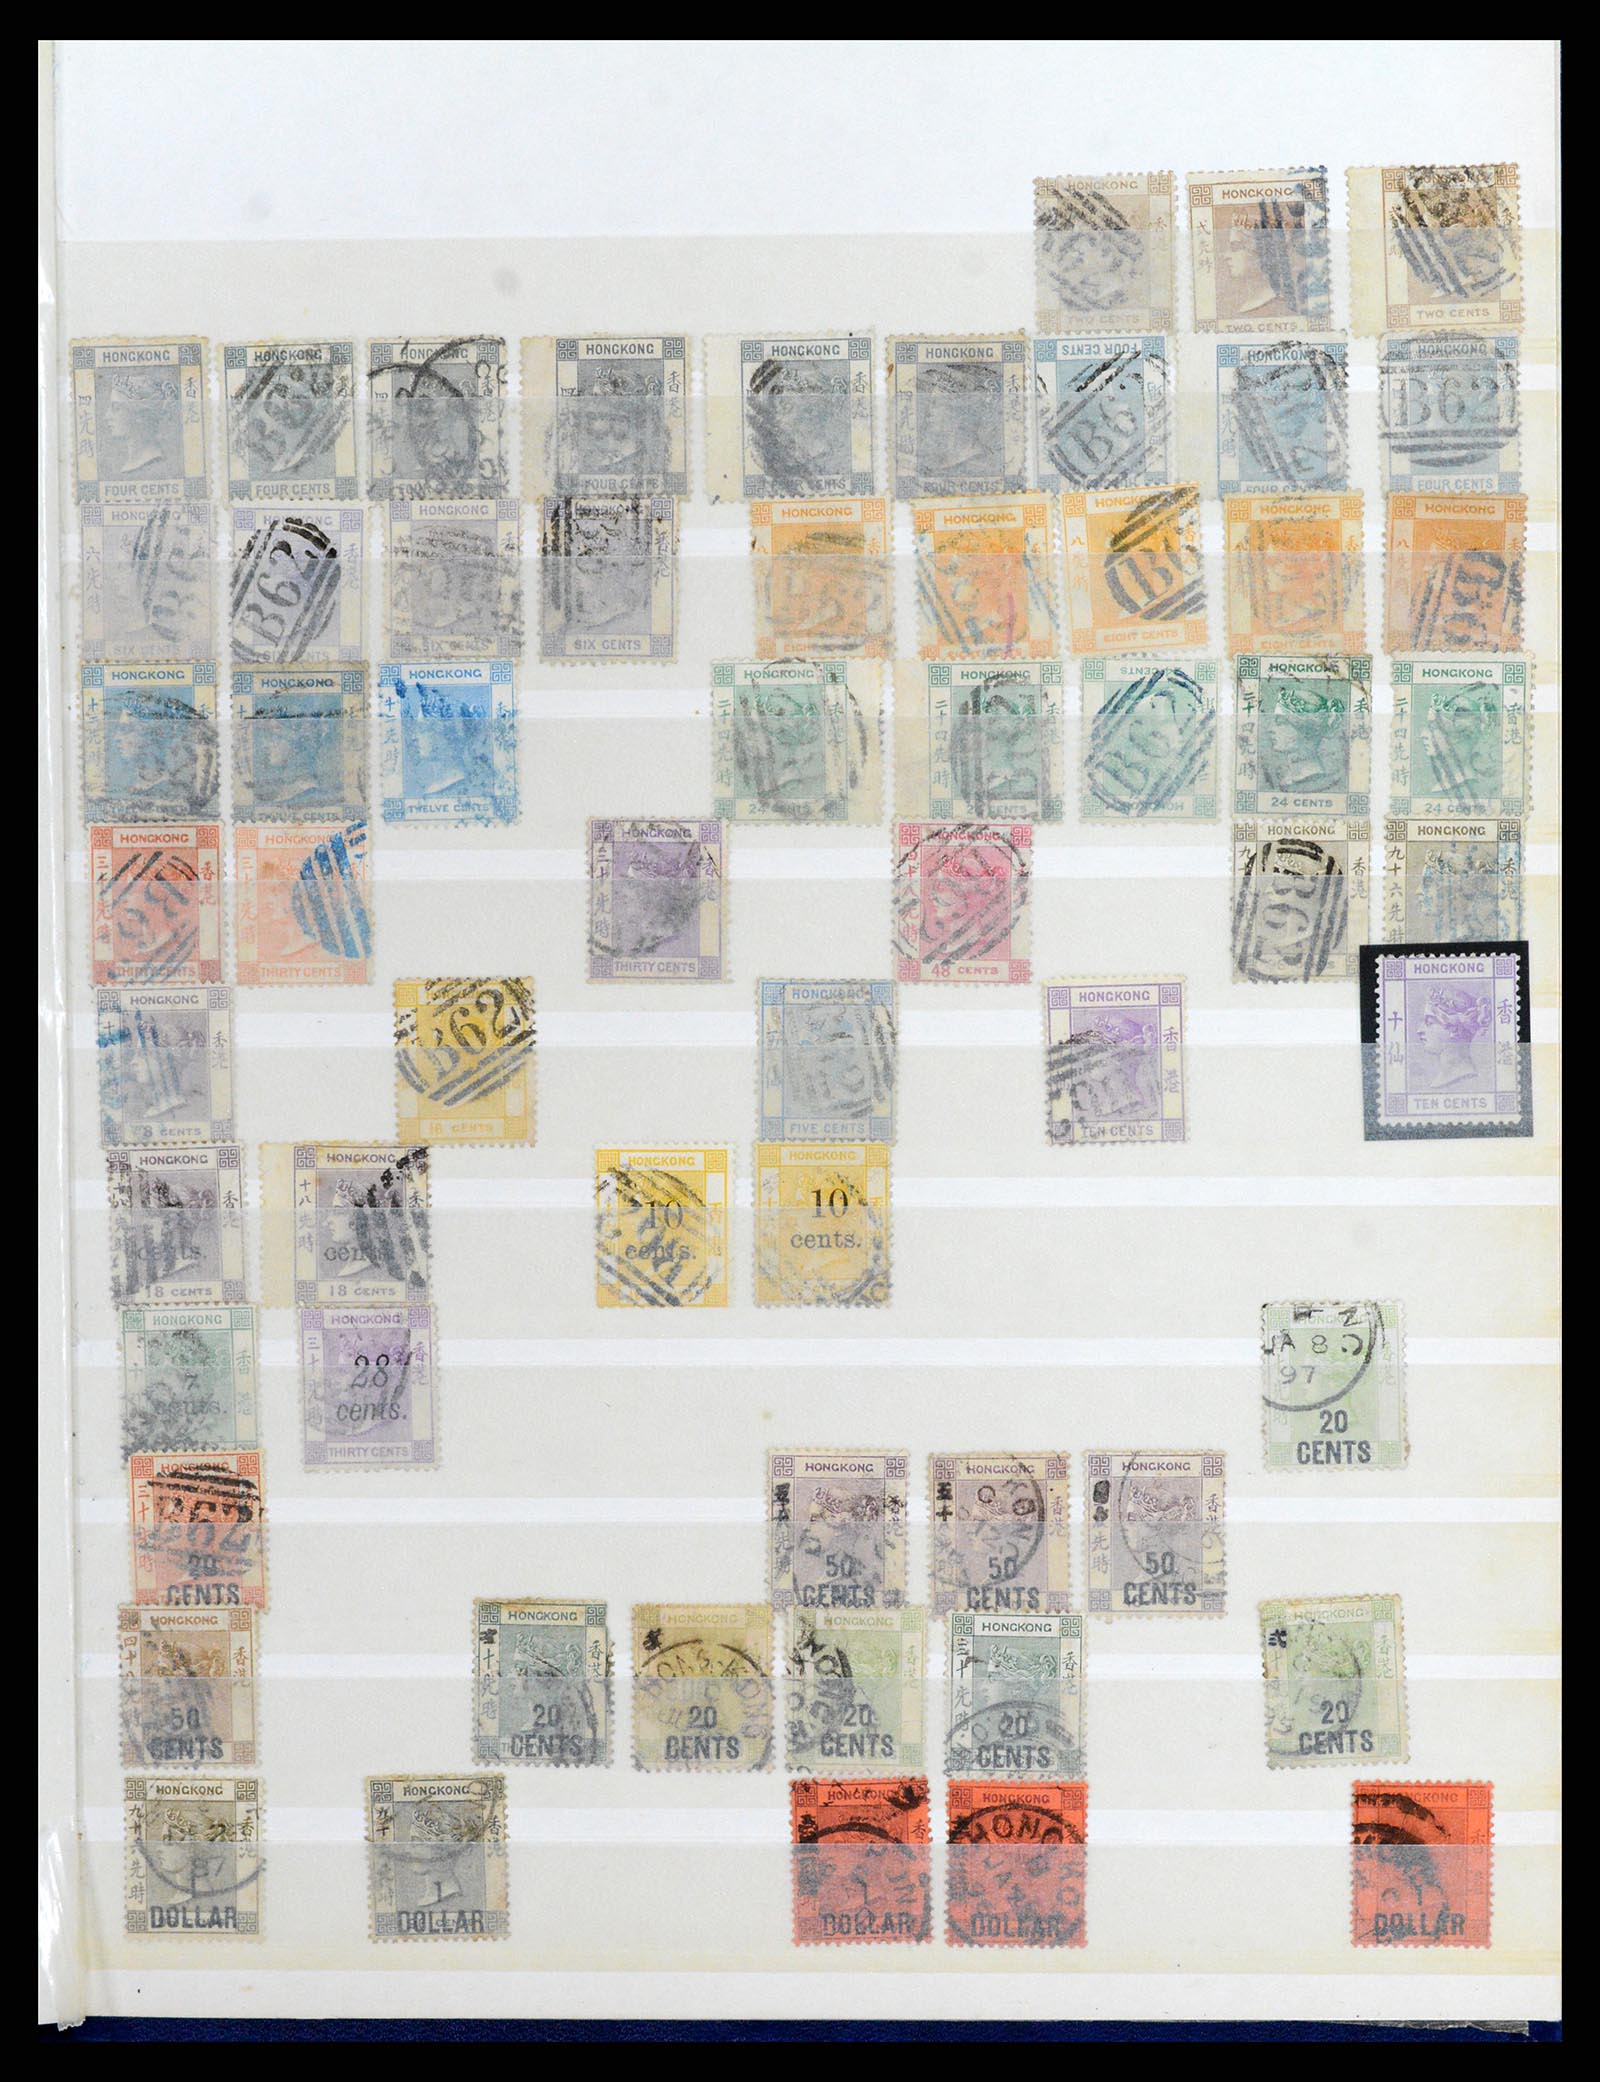 37358 040 - Stamp collection 37358 Hong Kong 1861-1997.